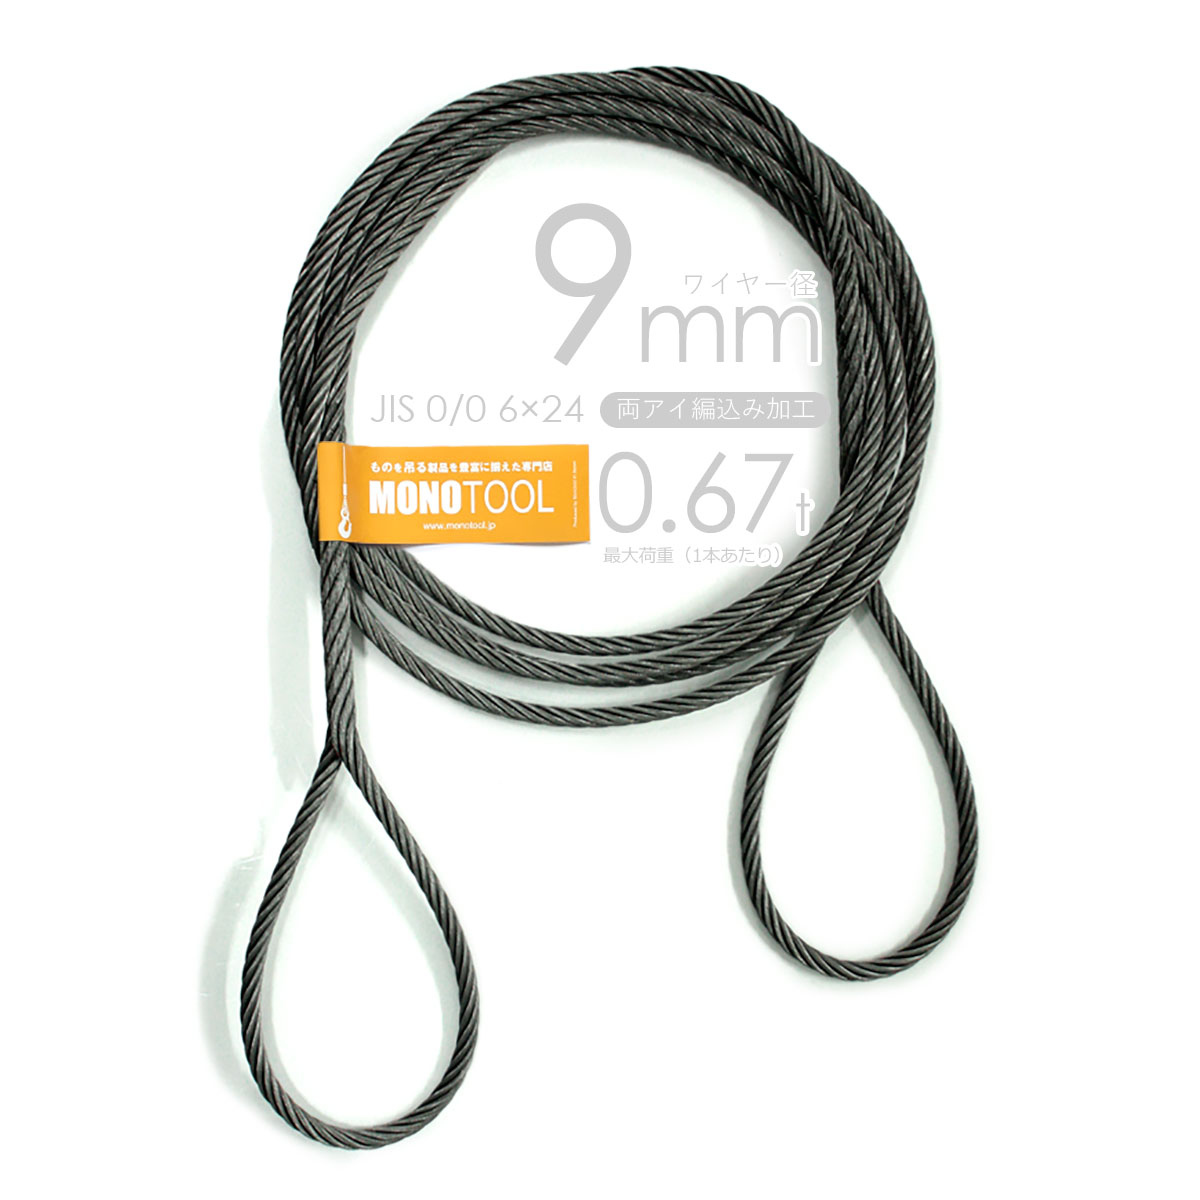 編み込み・フレミッシュ加工 JIS黒(O/O) 9mm(3分) 玉掛ワイヤロープ 2 ...